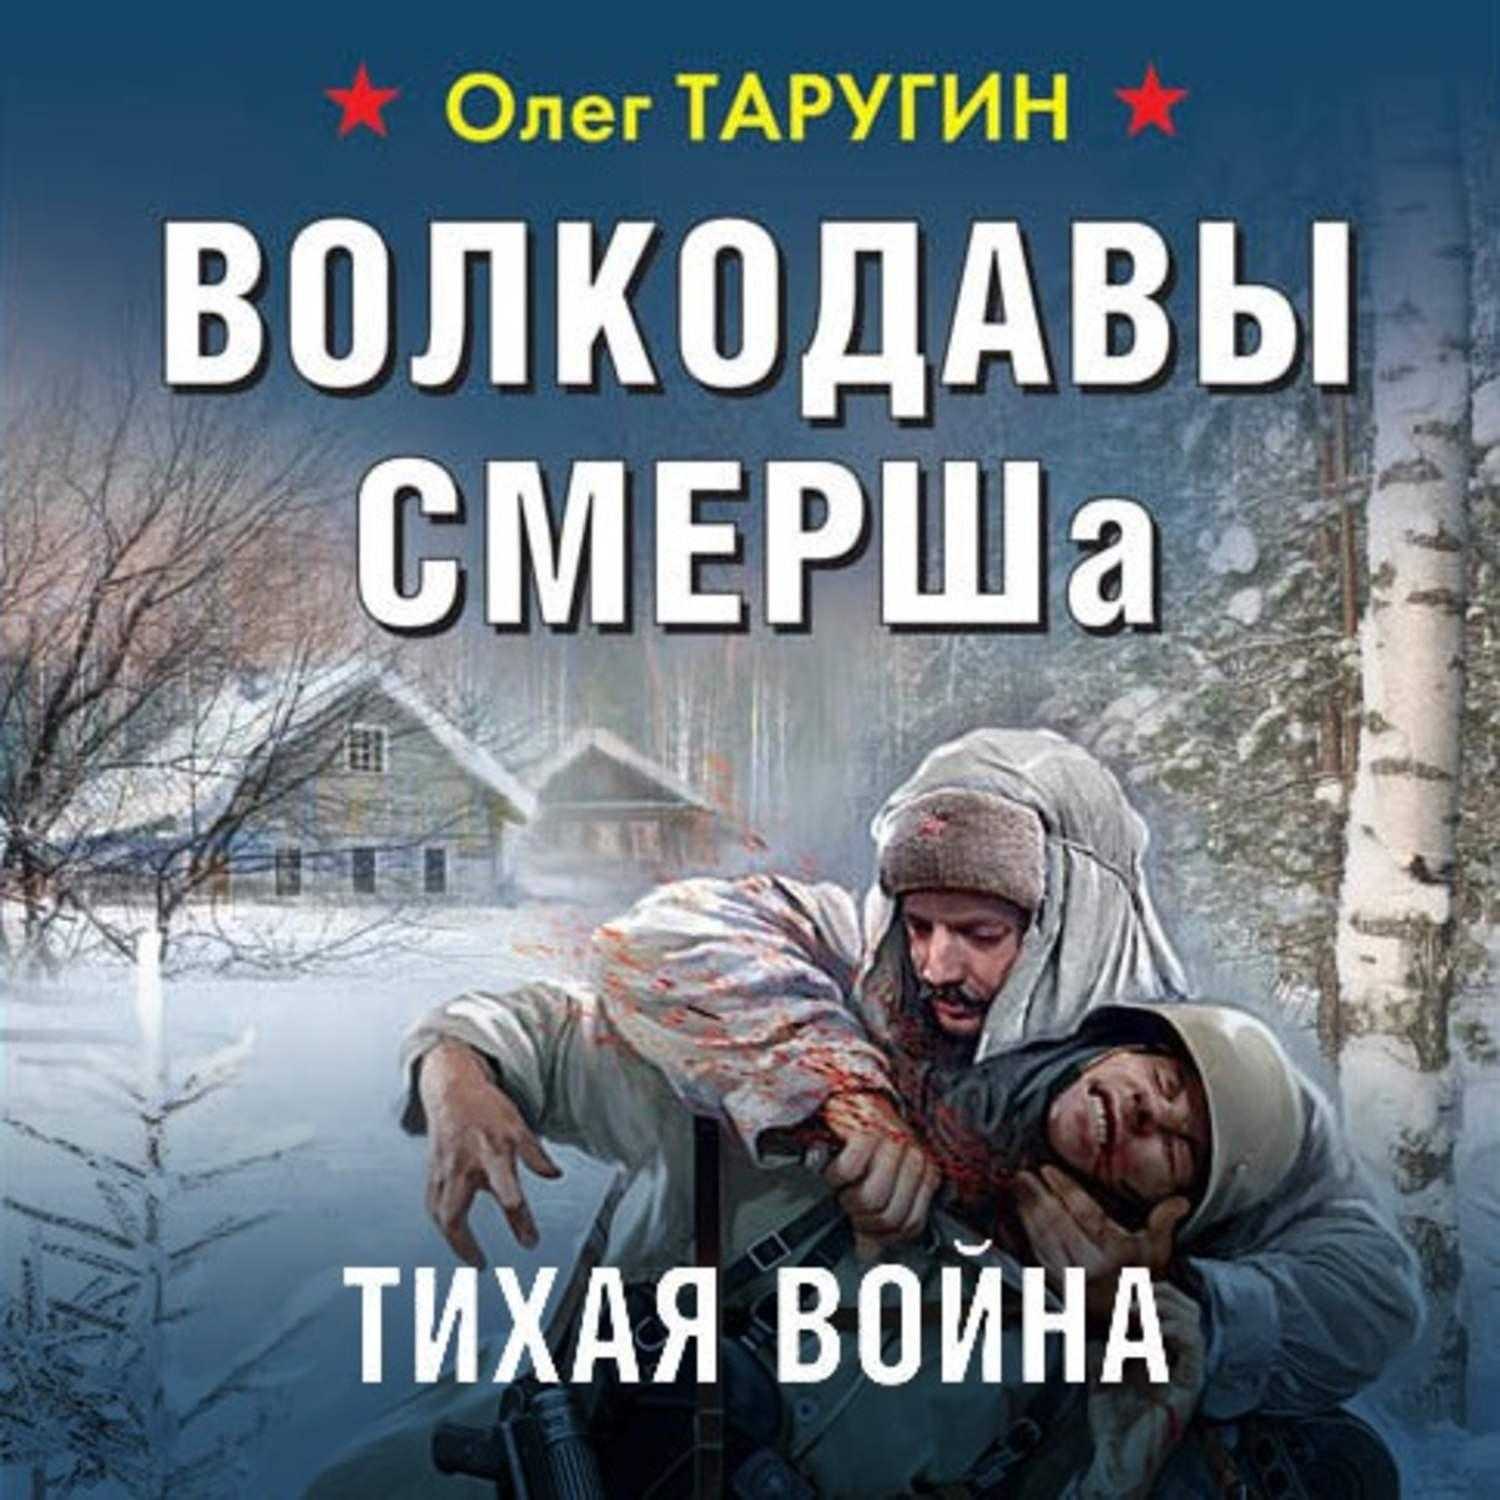 Олег таругин – скачать все книги бесплатно в fb2, epub, pdf, txt и без регистрации или читать онлайн – fictionbook